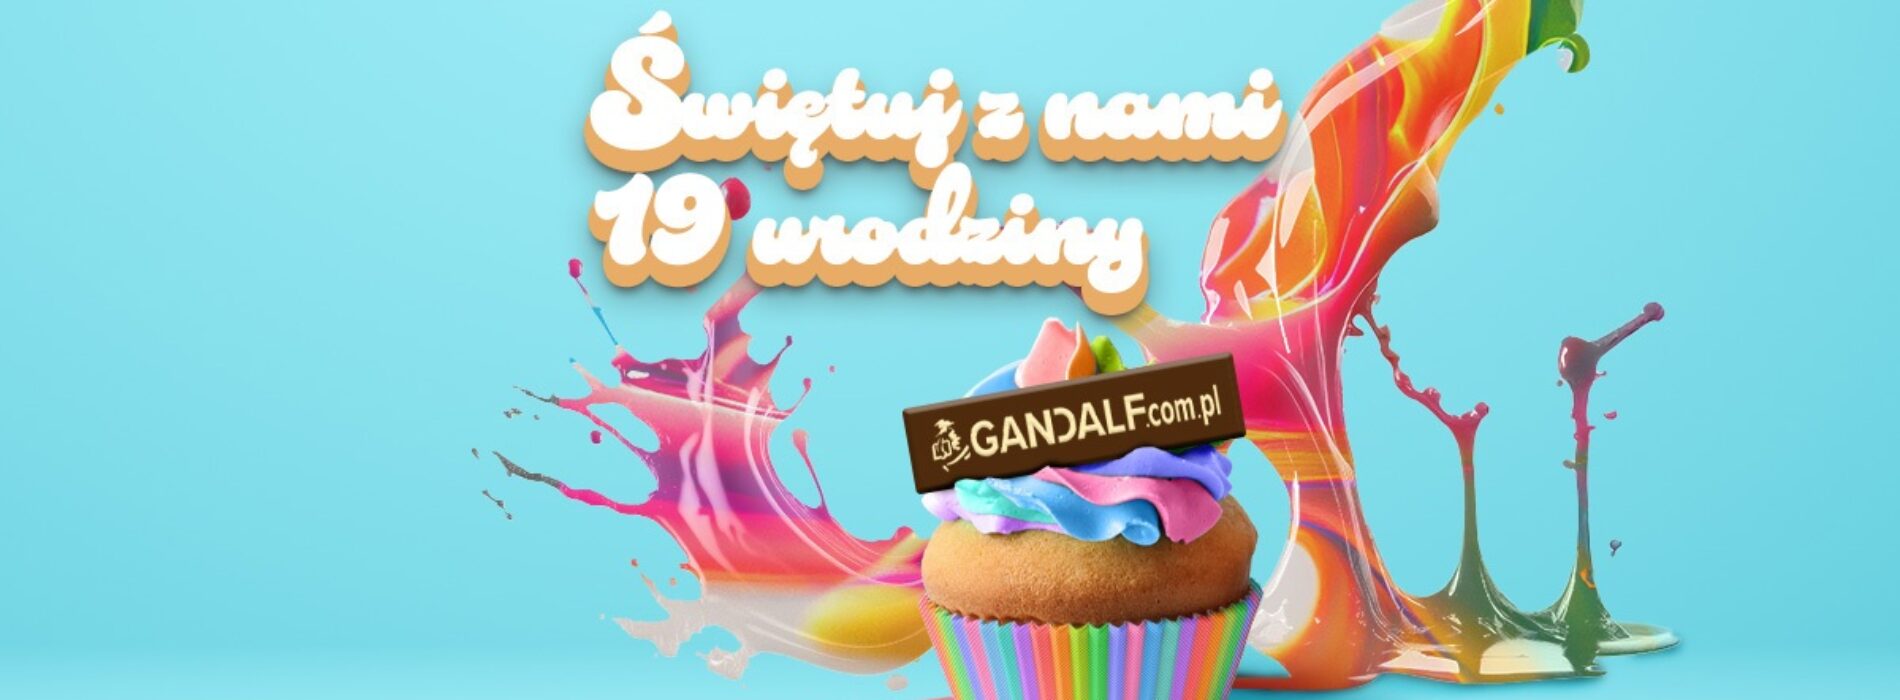 Gandalf.com.pl świętuje 19. urodziny! Nie przegap promocji i konkursów z nagrodami!